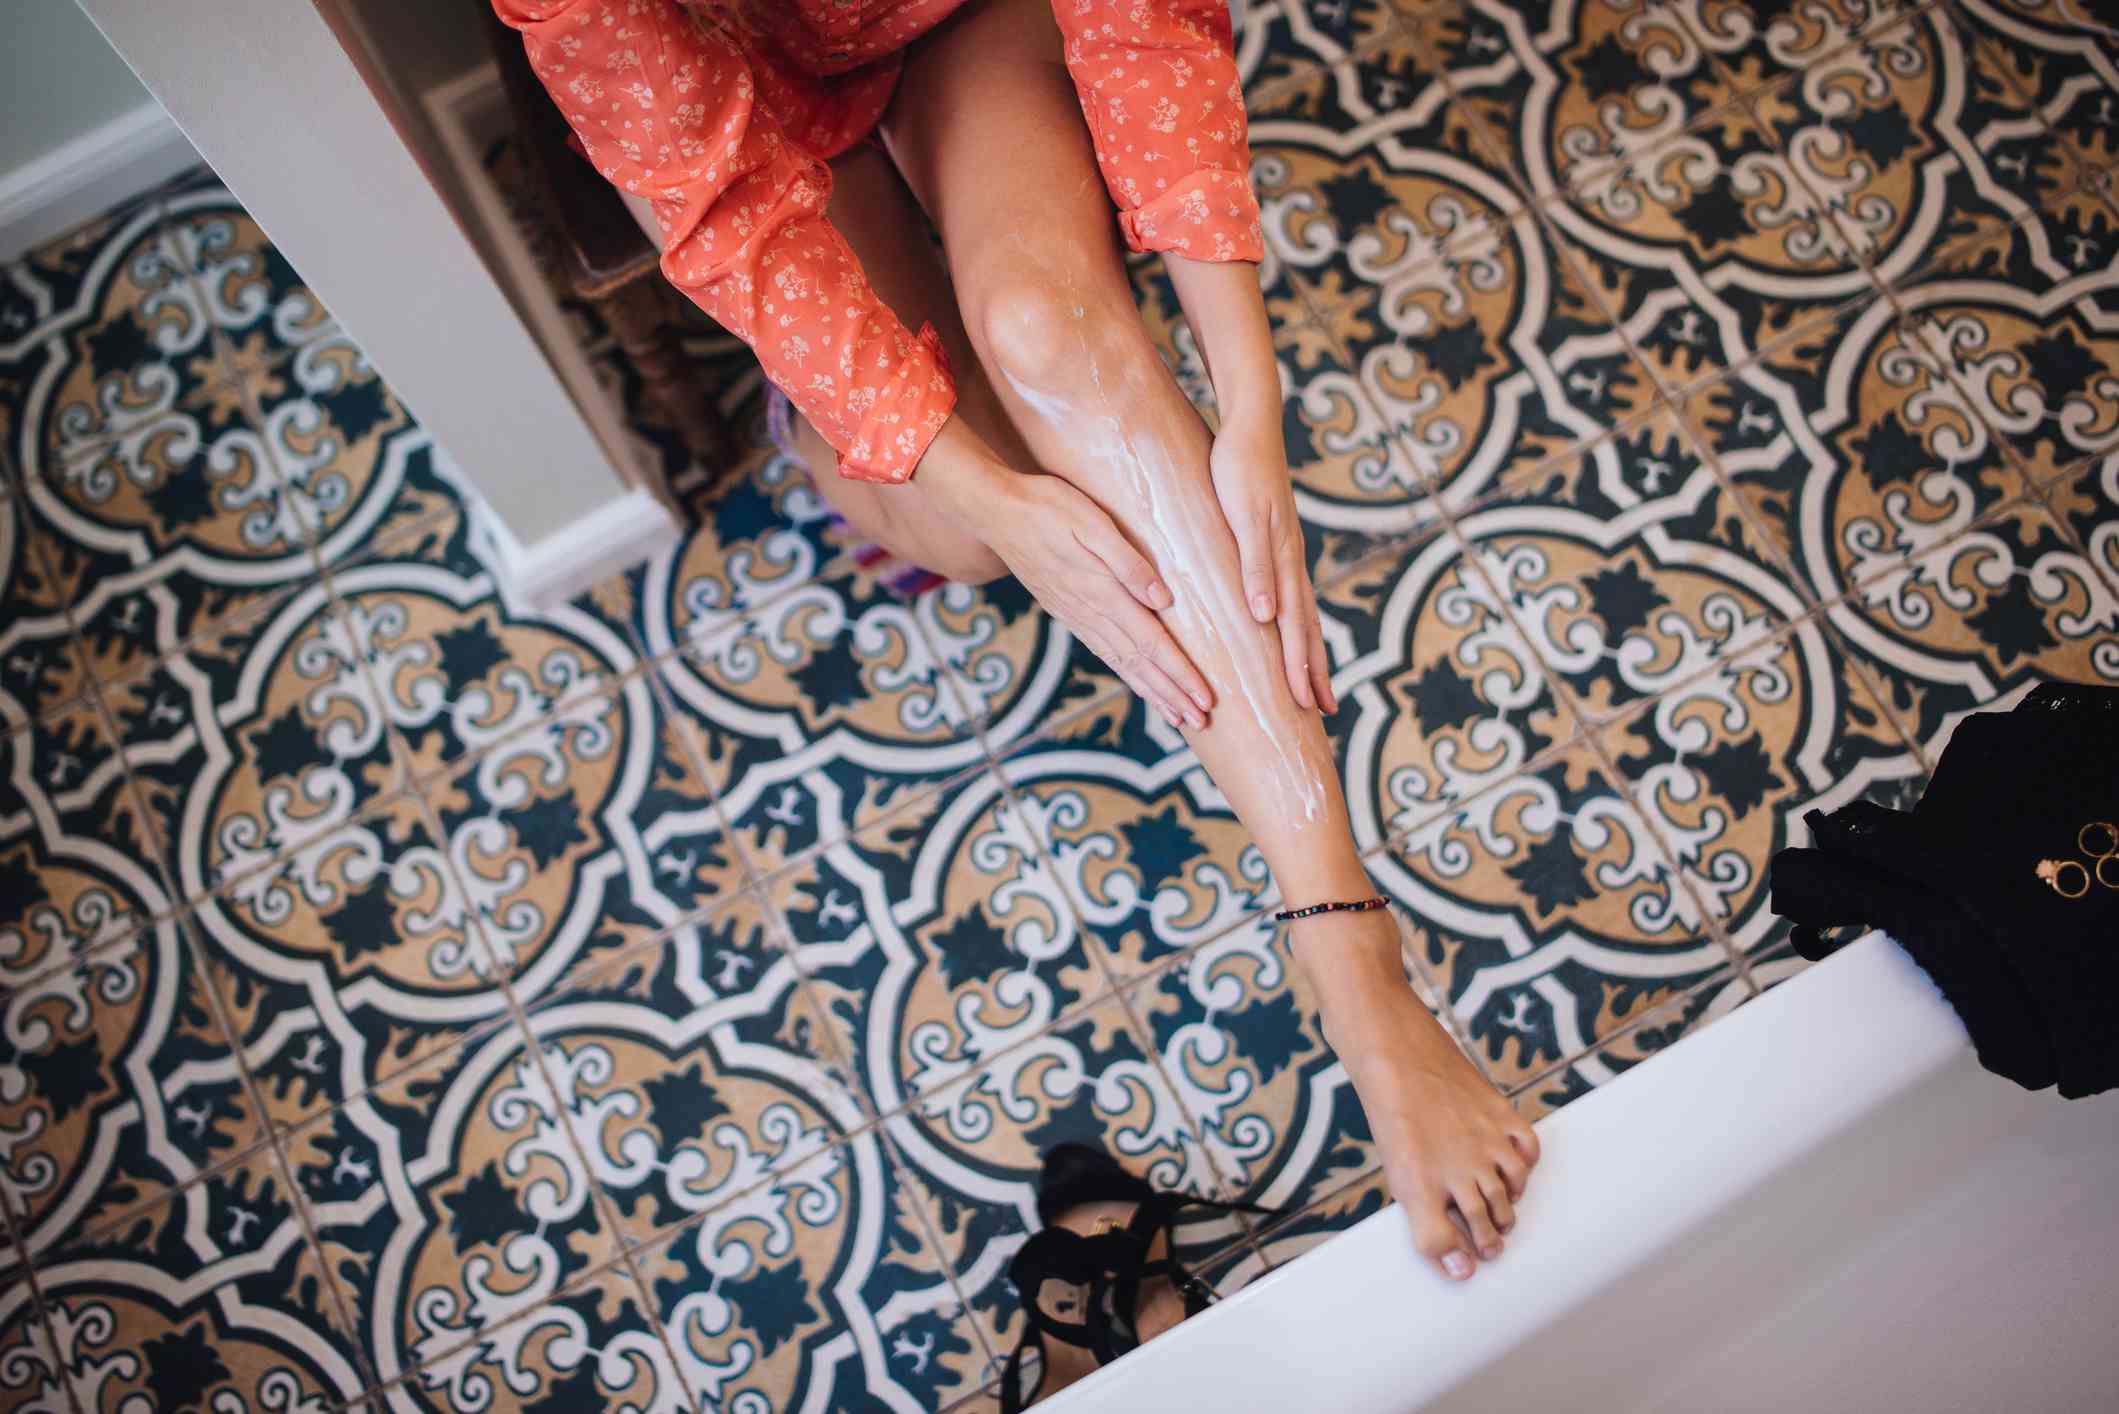 一名妇女在一间铺着复杂瓷砖的洗手间里往腿上涂乳液。